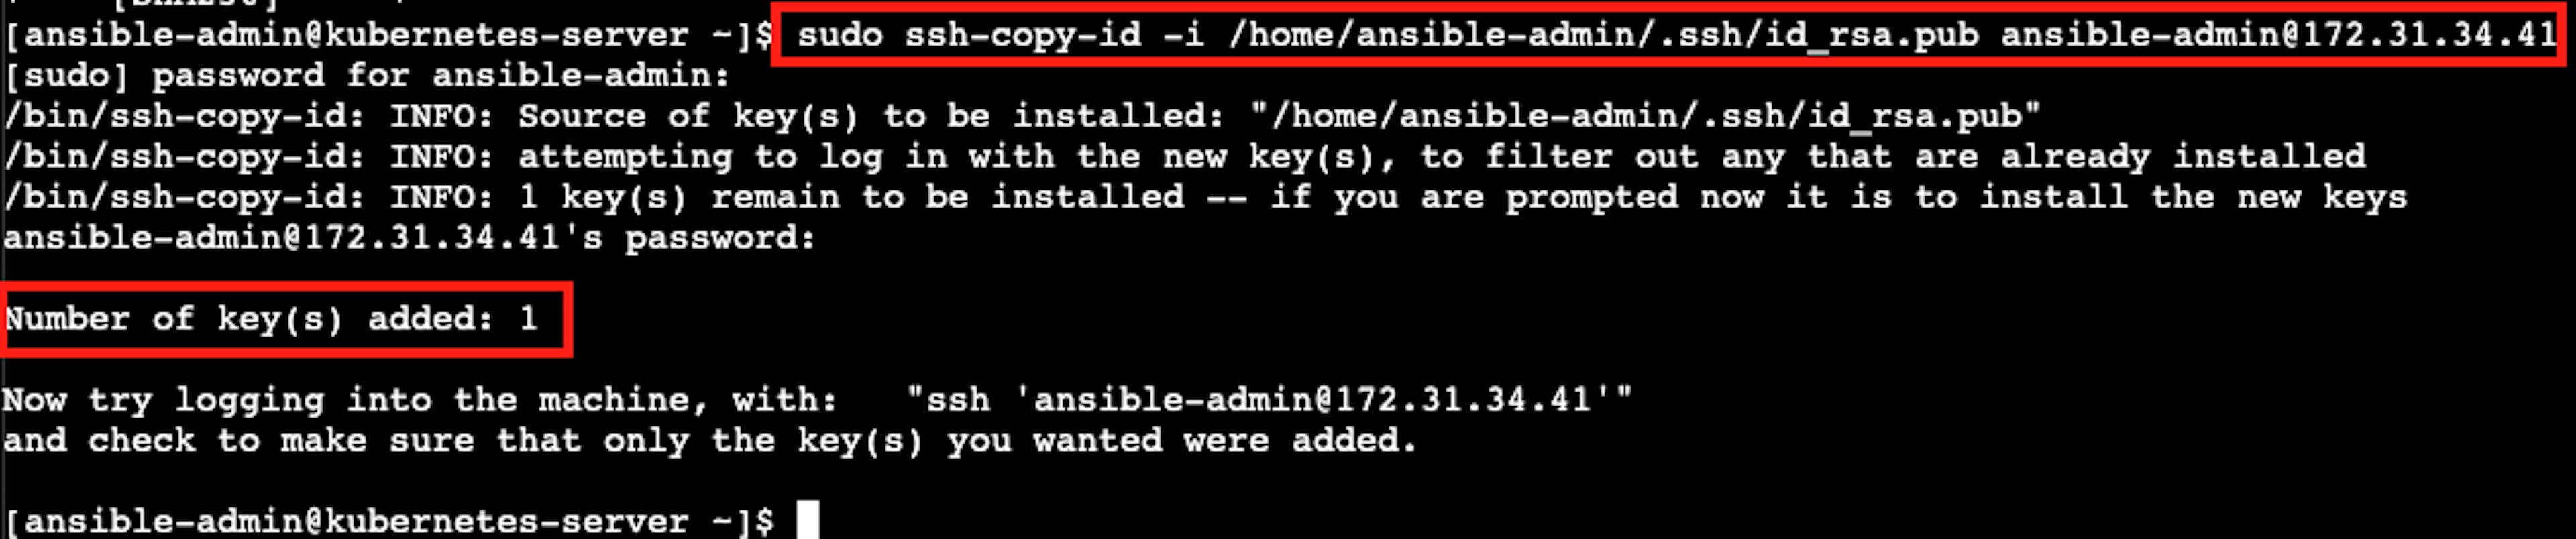 Снимок экрана с результатом успешной установки аутентификации SSH без пароля.